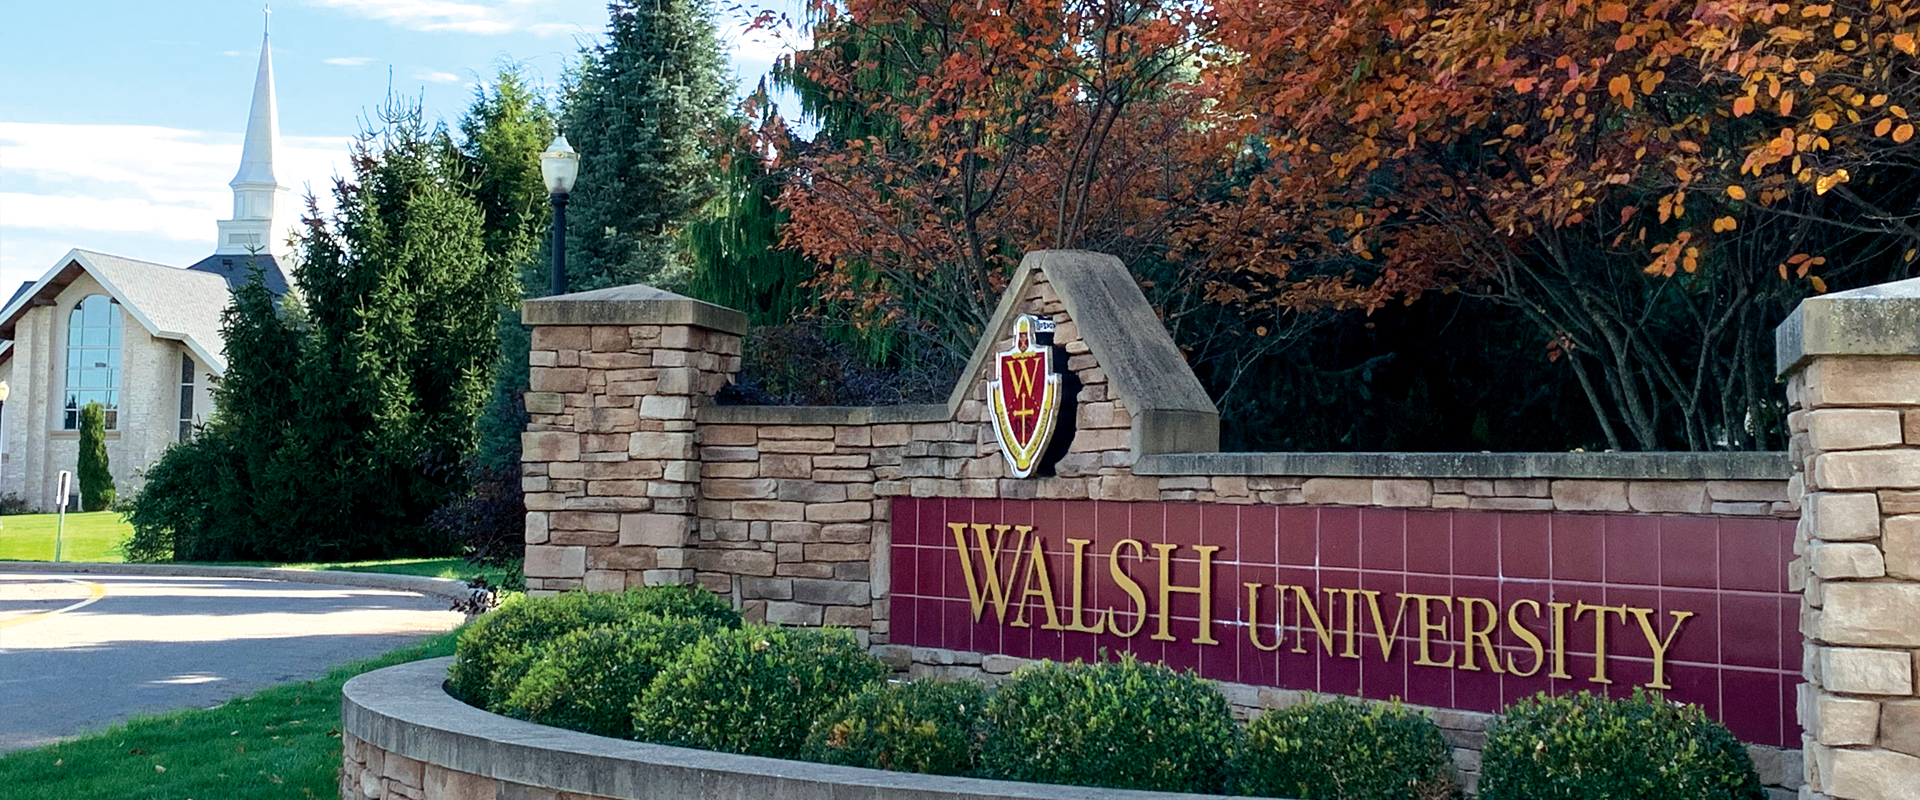 Walsh entrance